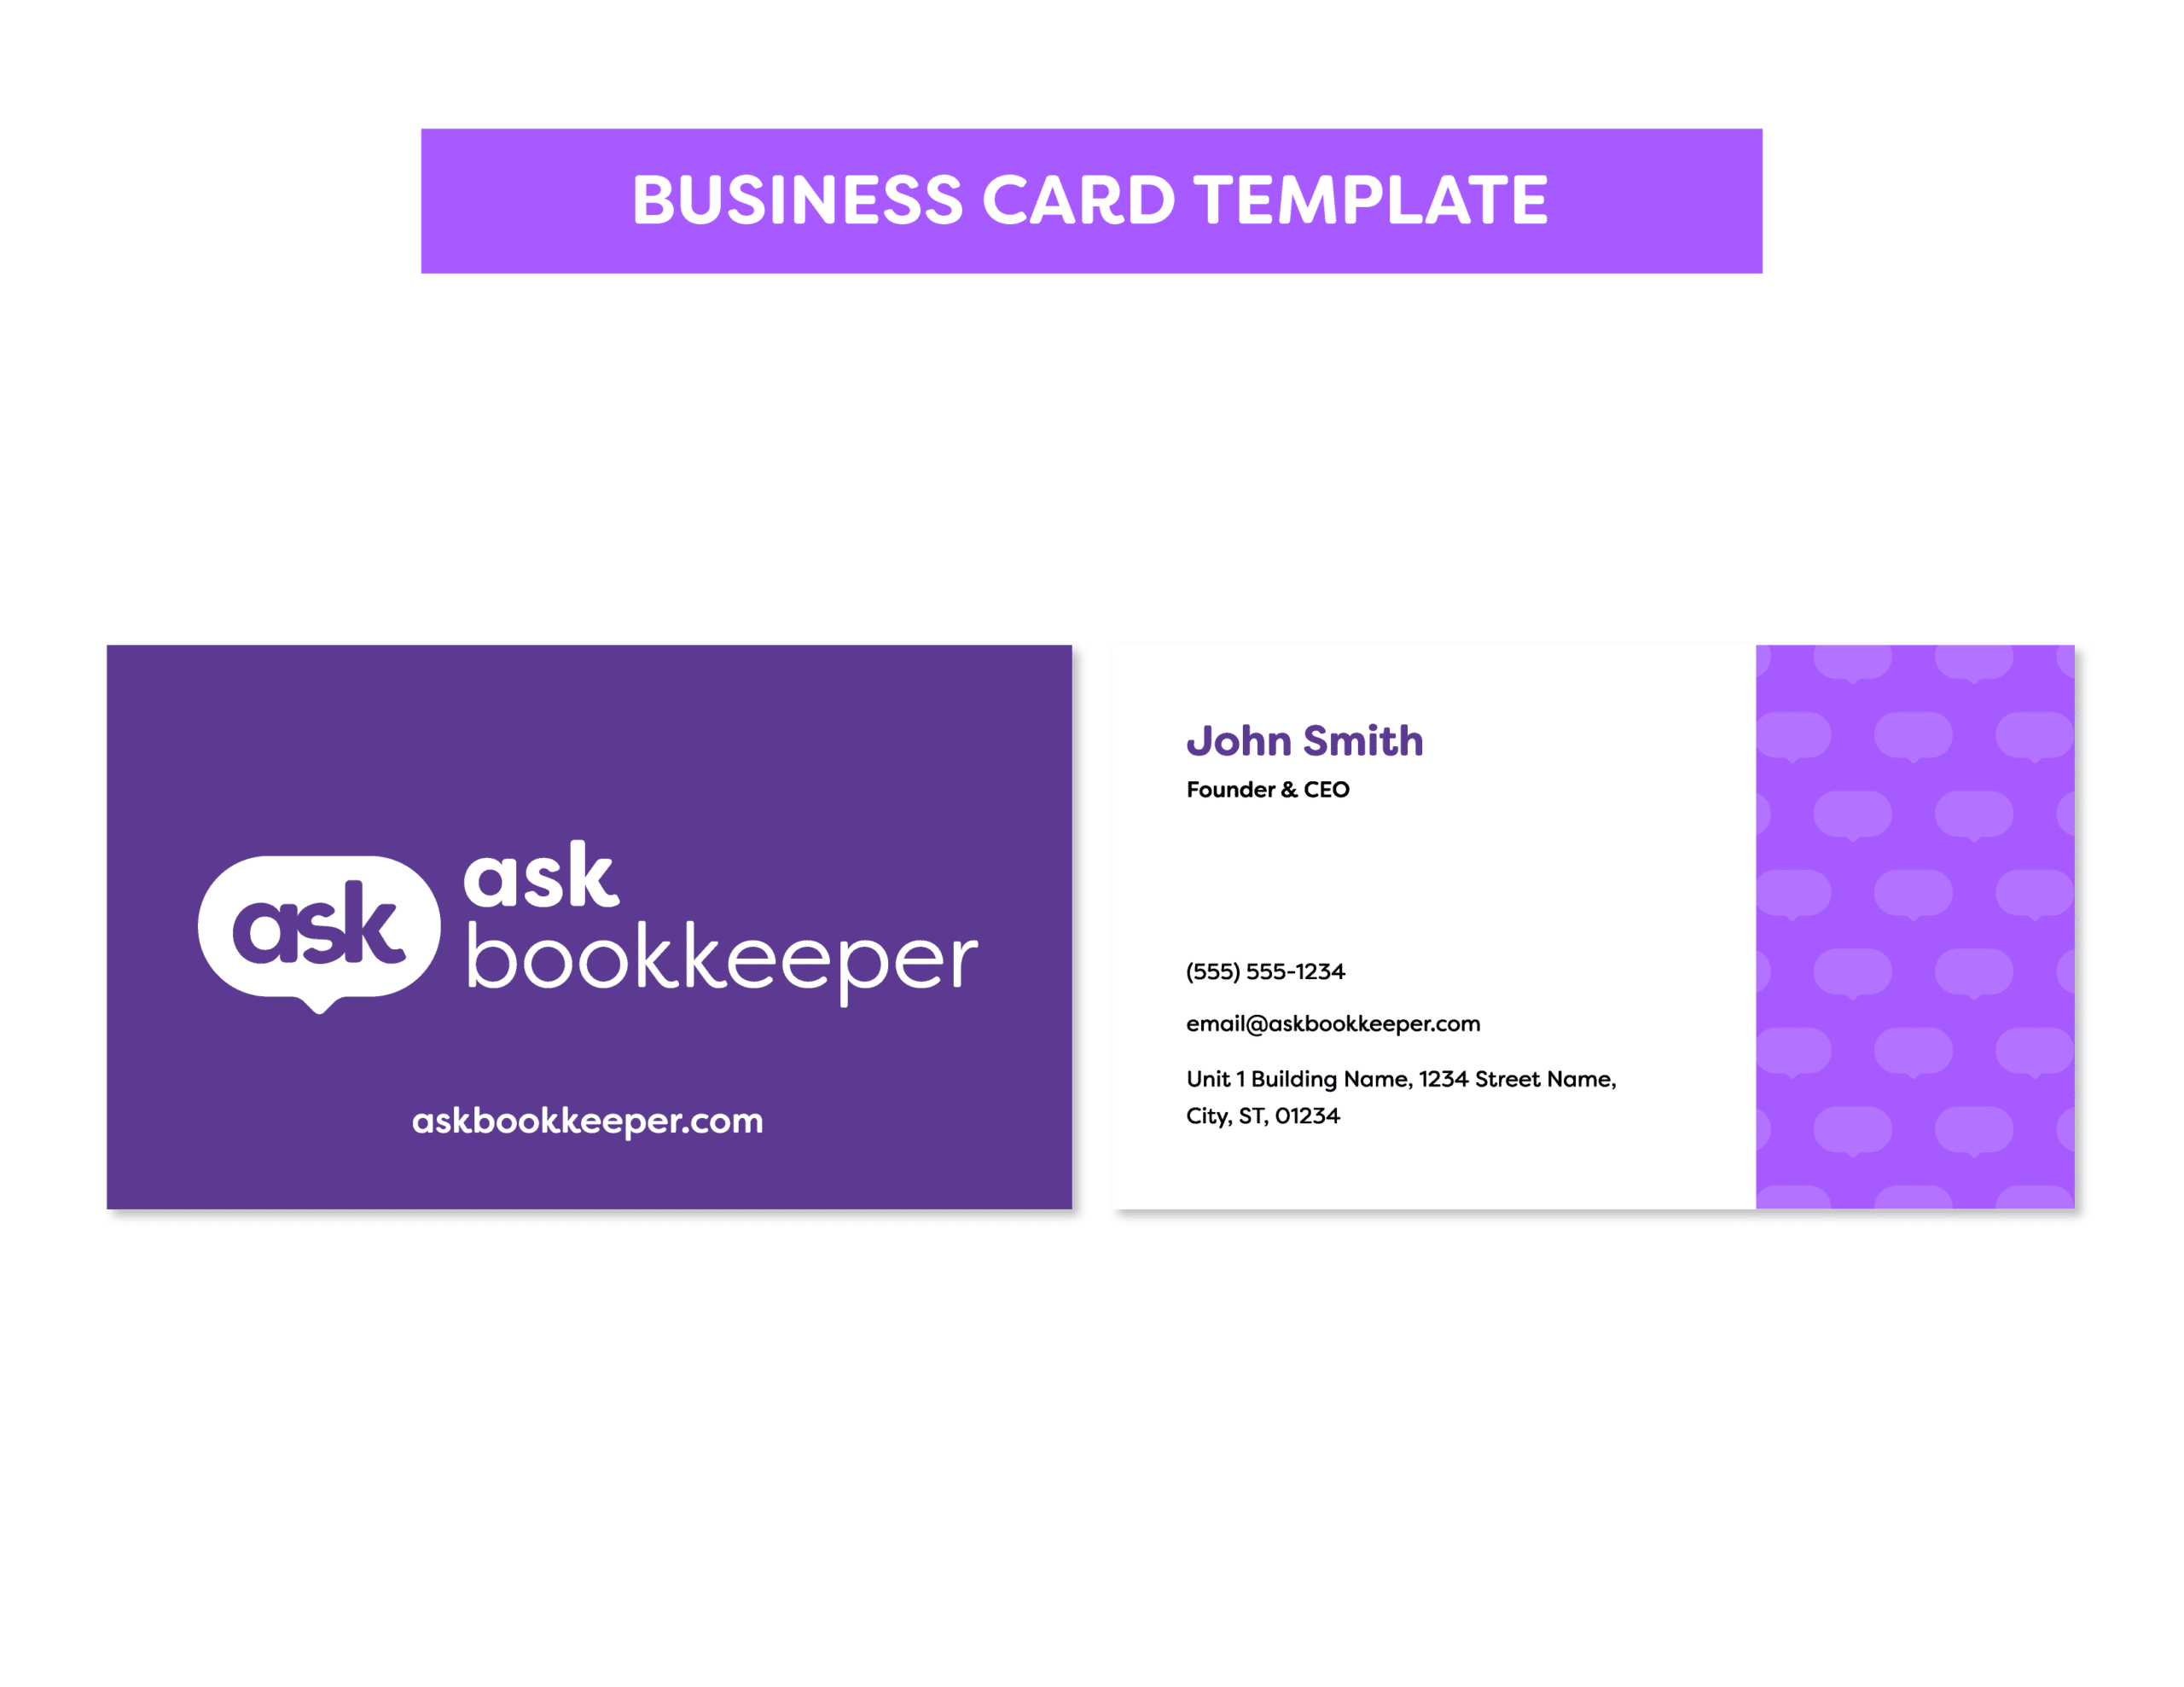 04AskBK_Business Card Template